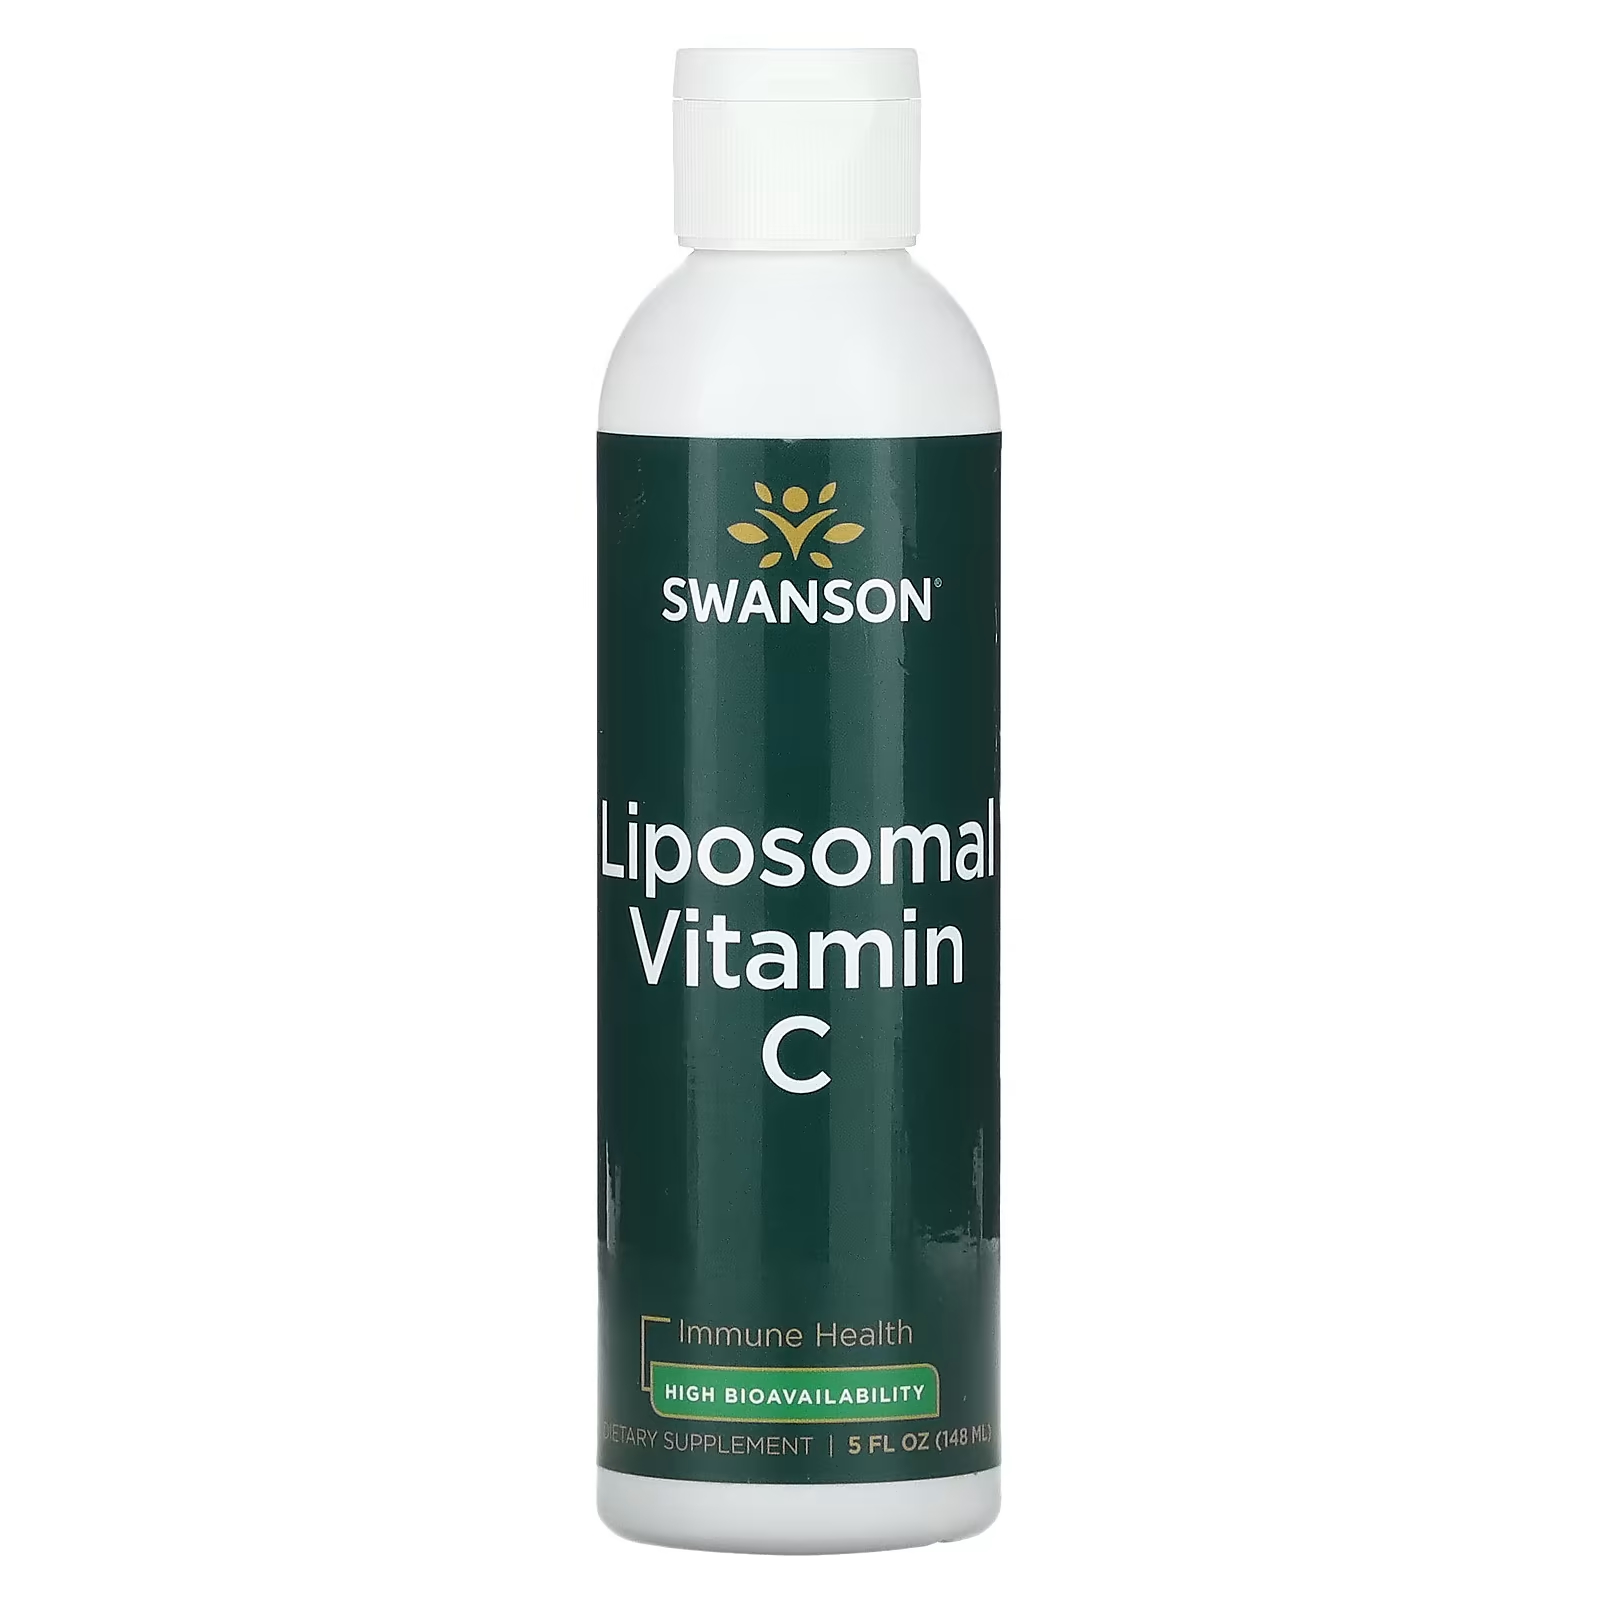 Swanson Липосомальный витамин С, 5 жидких унций (148 мл)